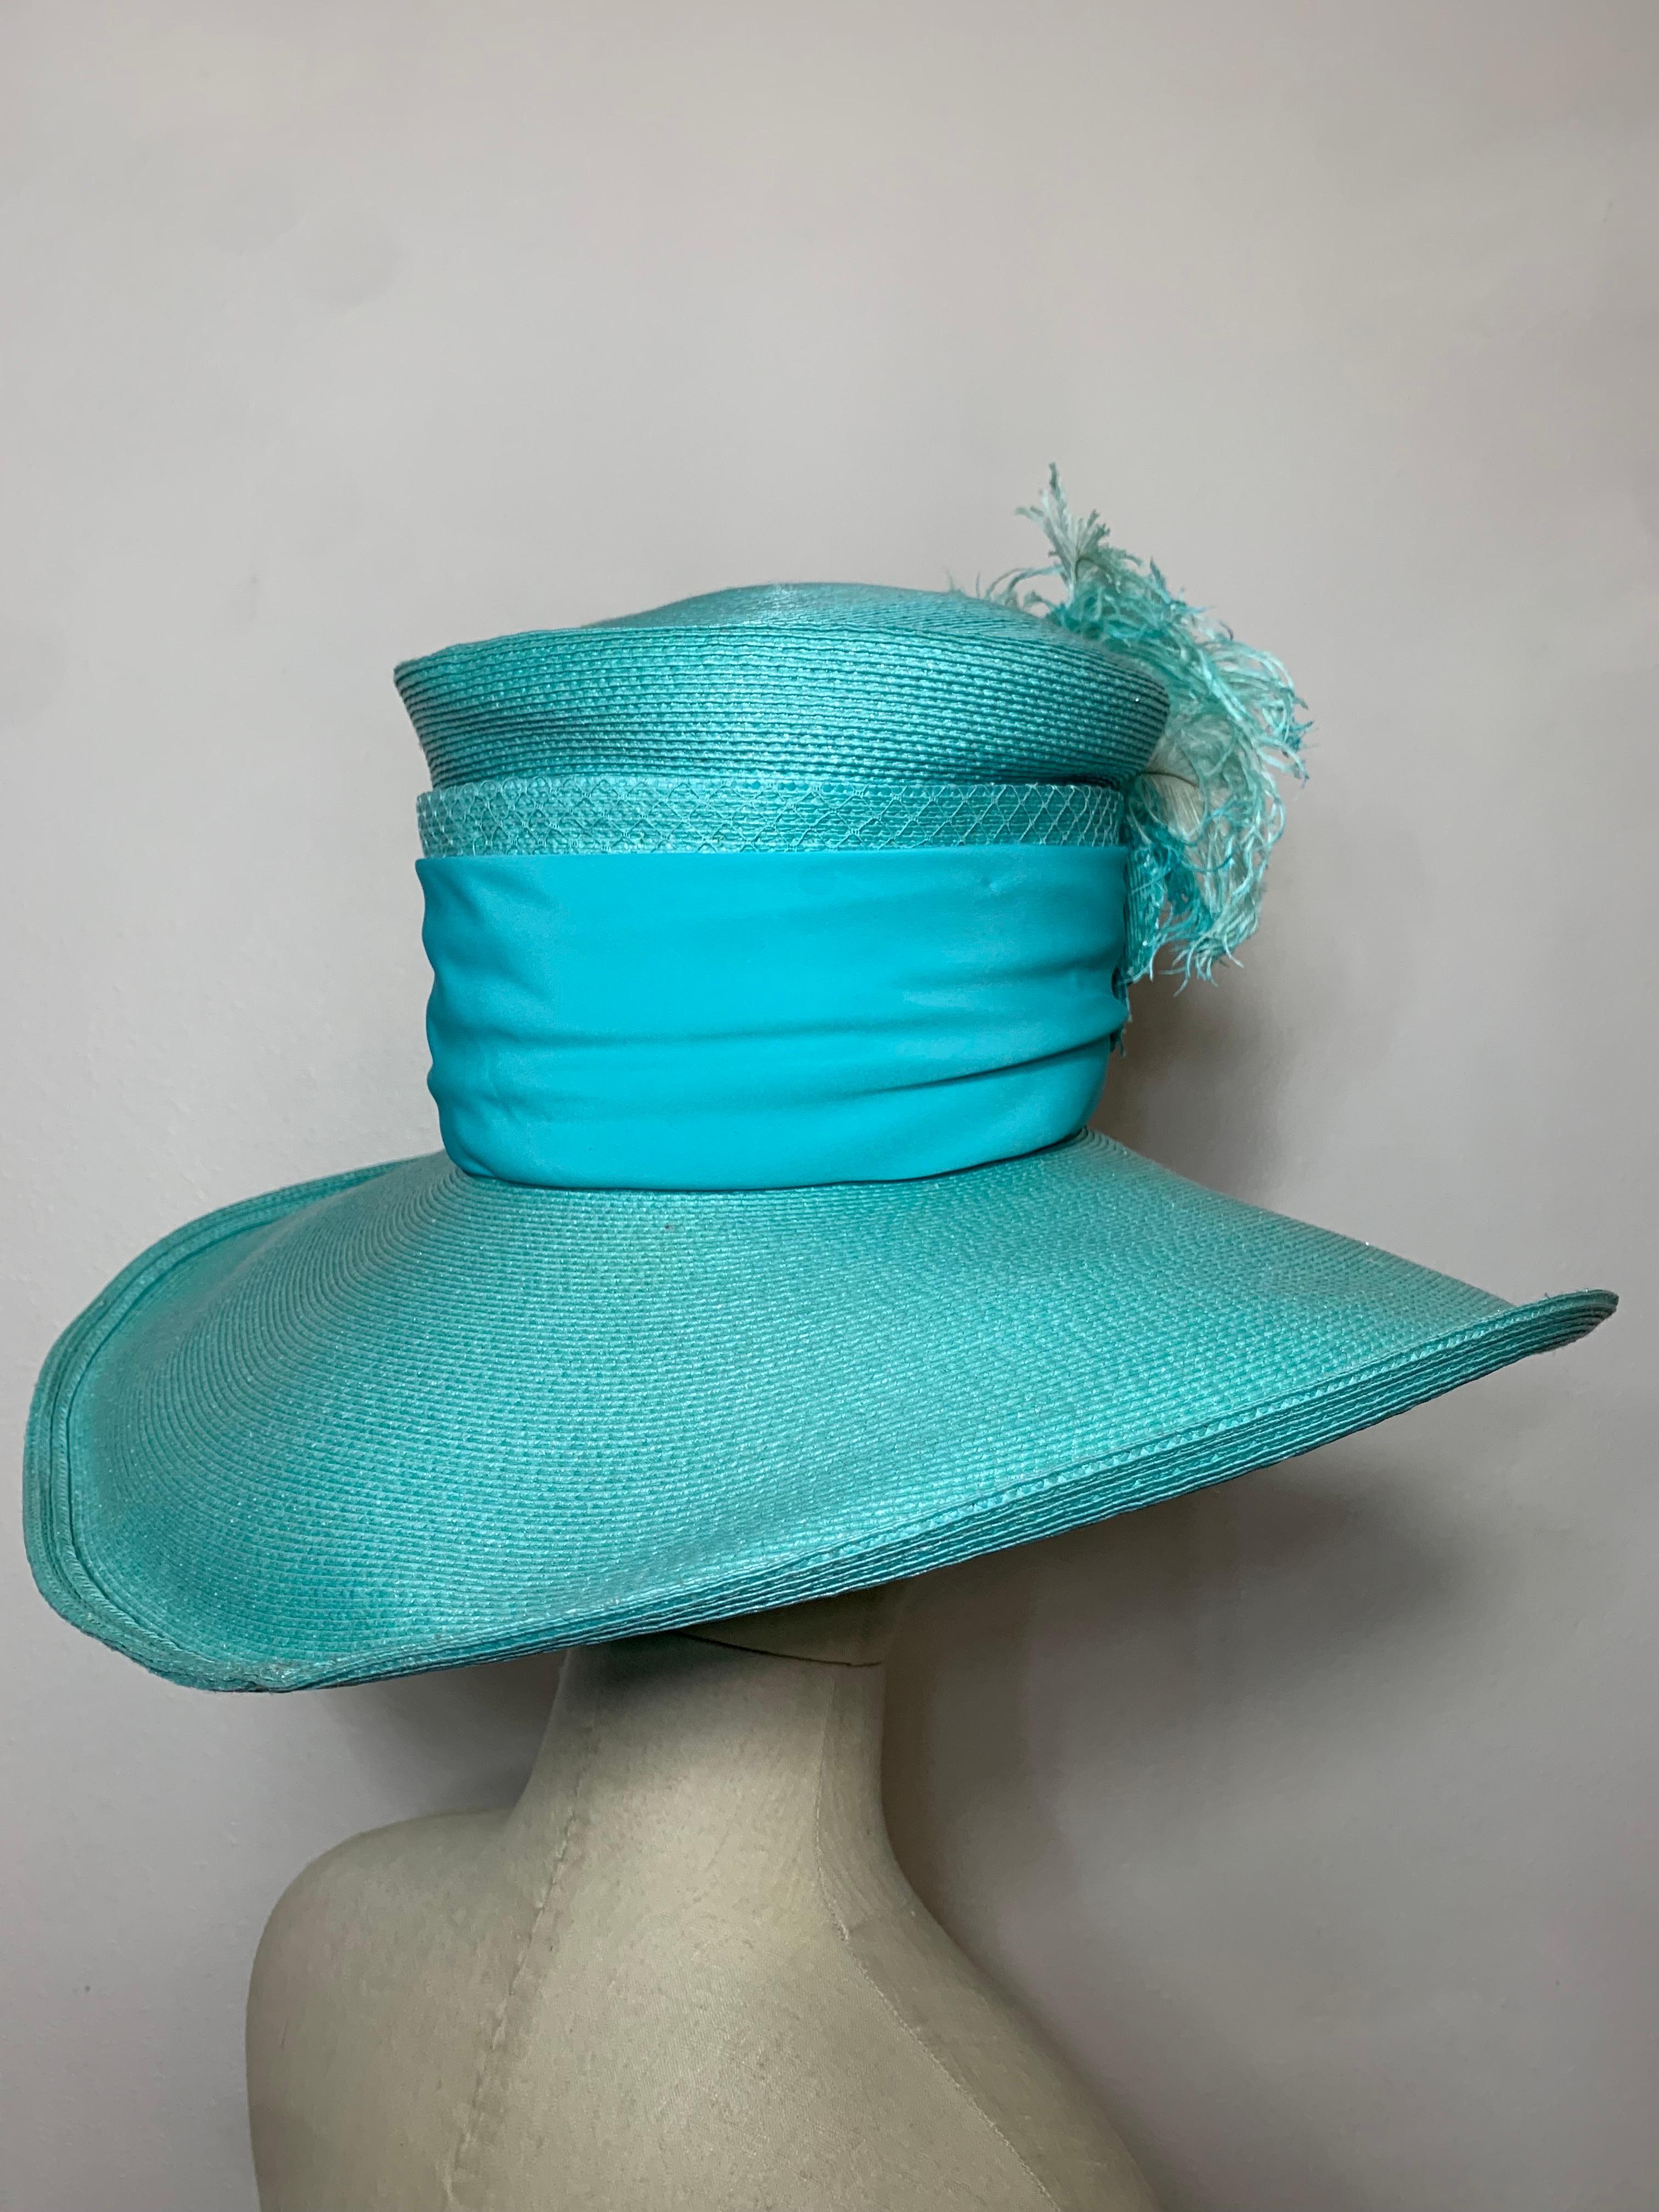 2005 Maison Michel Aqua Straw Wide Brim Hat w Extravagant Feather & Floral Trim For Sale 3